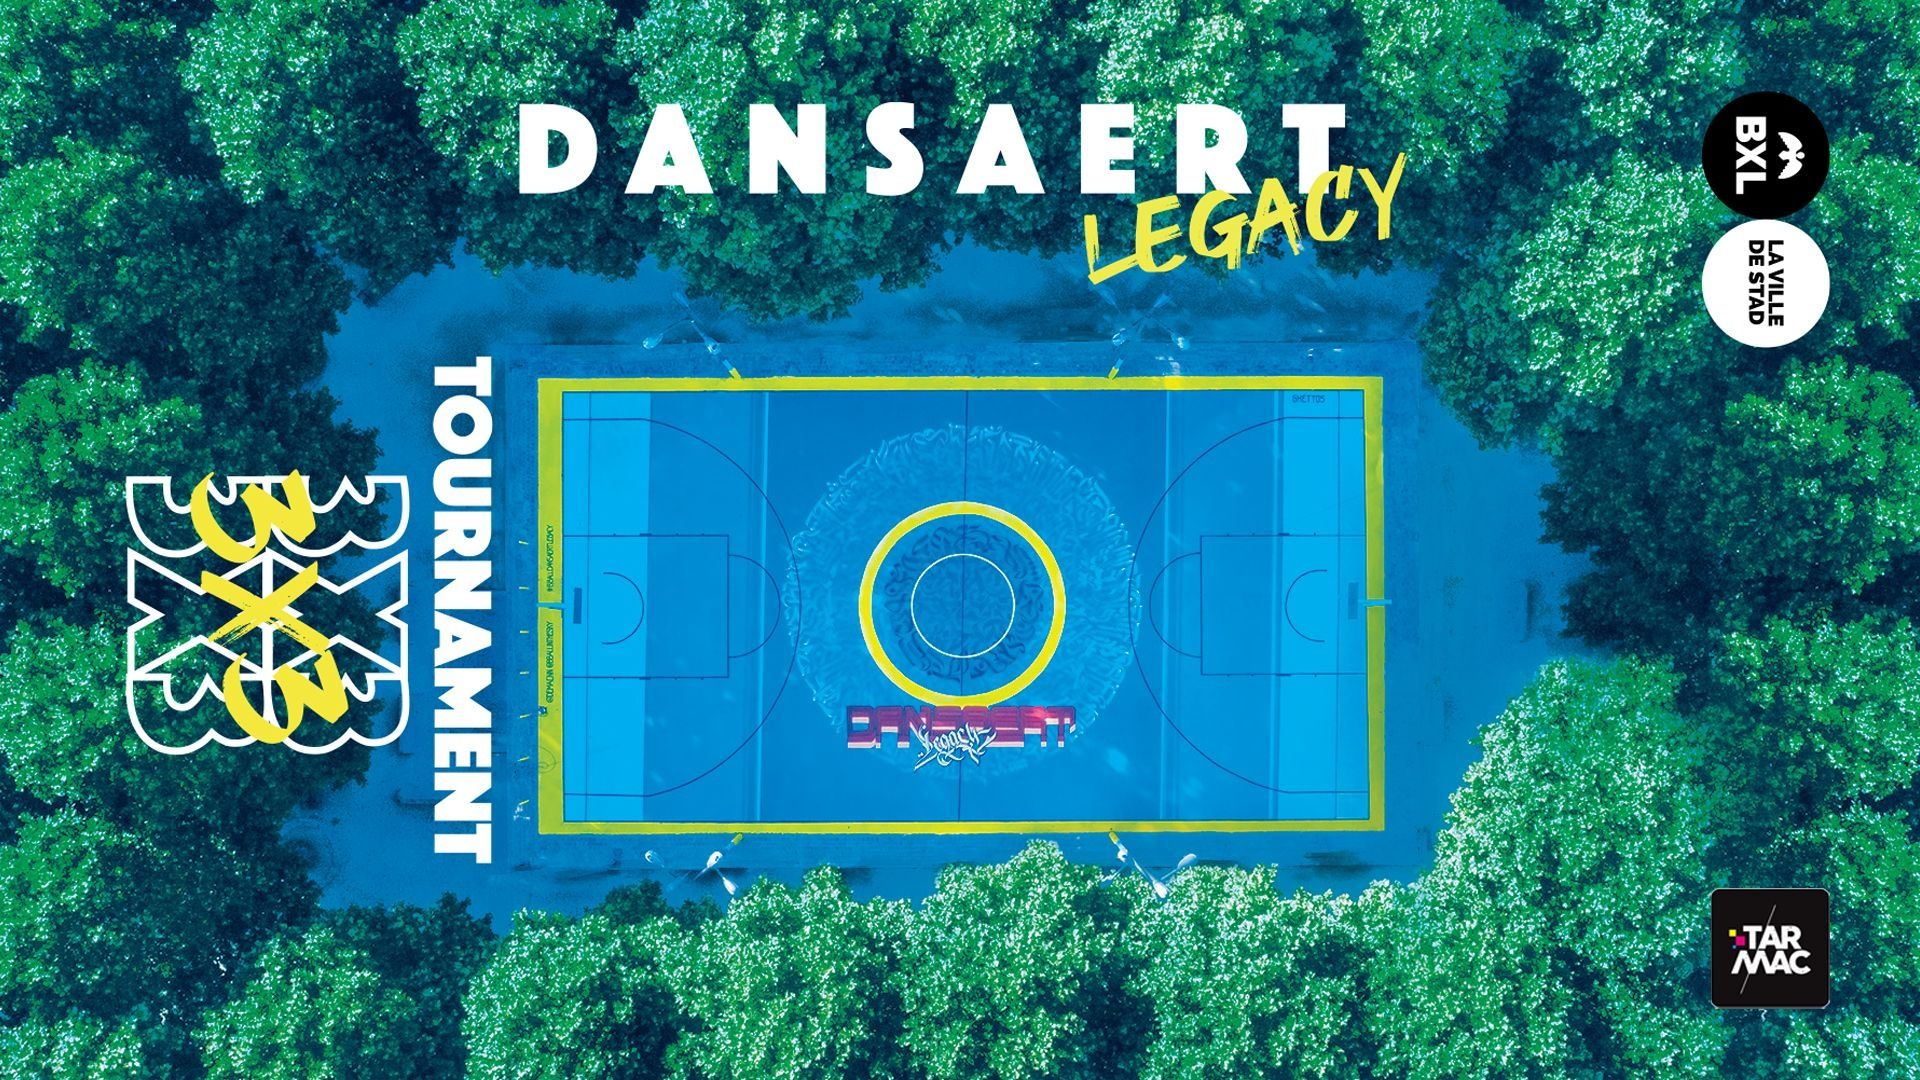 Dansaert Legacy 3X3 Tournament promet des beaux moments historiques